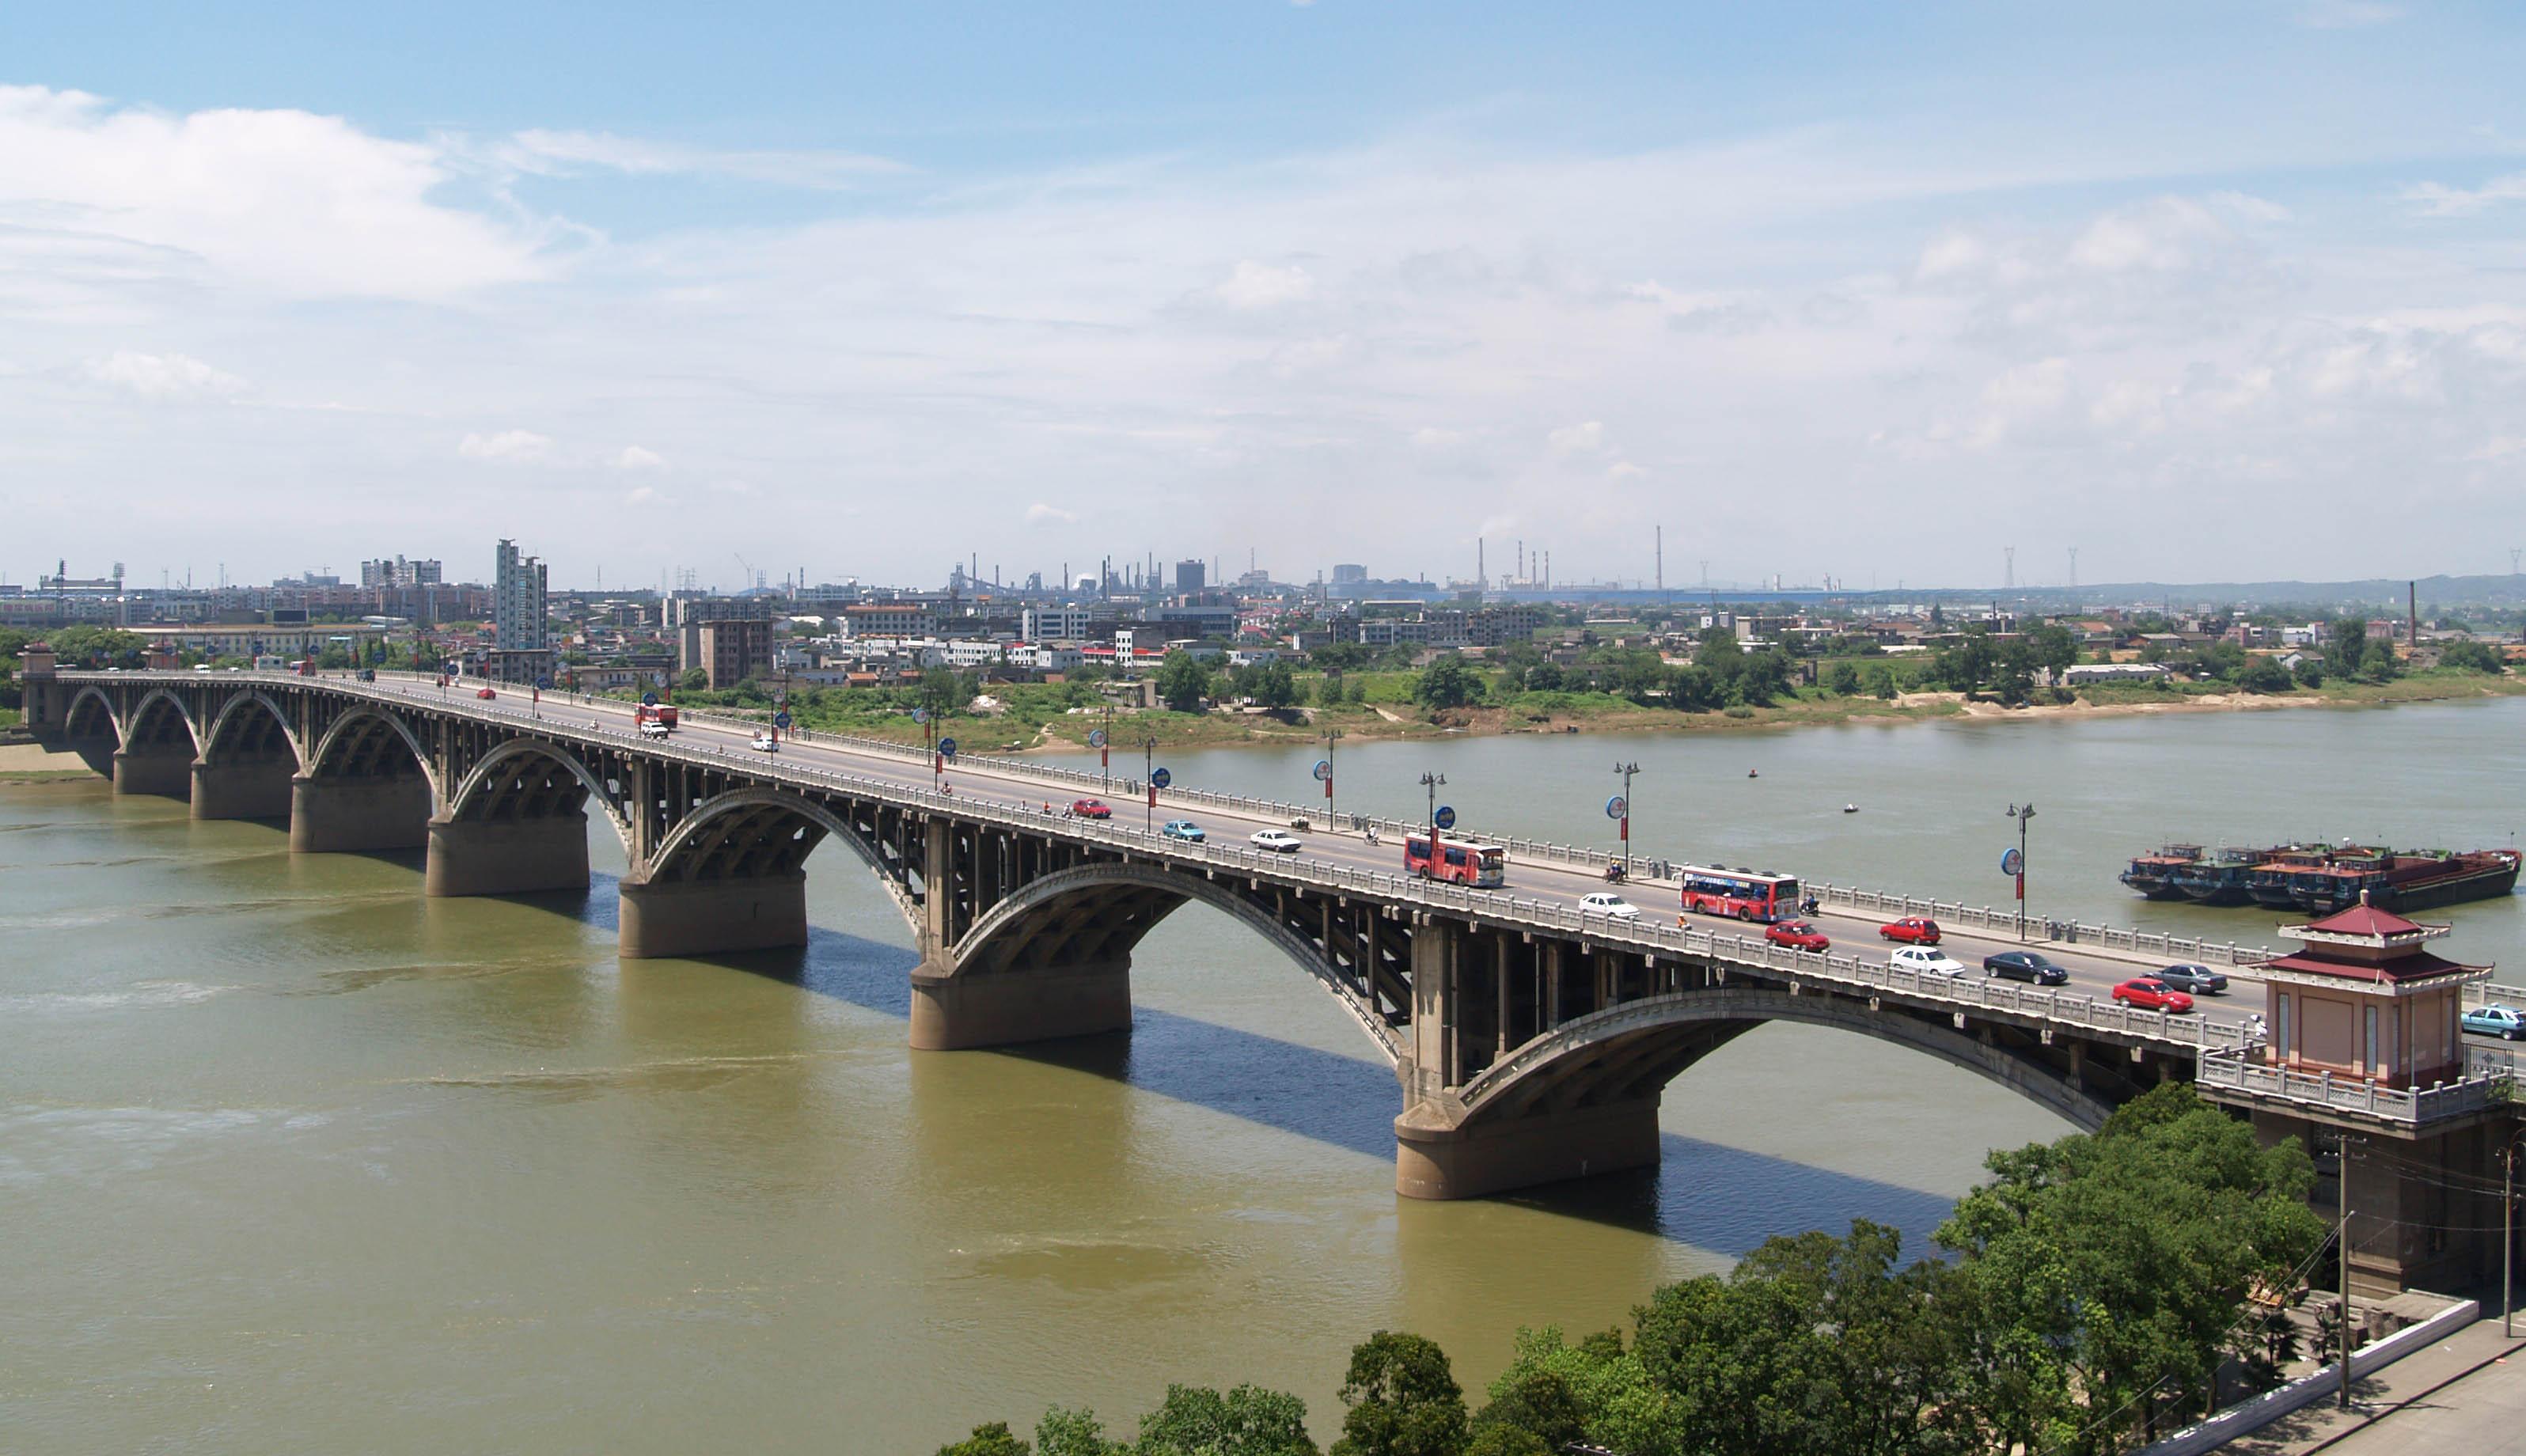 公司承建的湘潭一大桥工程被誉为“千里湘江第一桥”<h2>6615中彩网登录</h2>，比长沙市的第一座湘江大桥还早10年<h2>6615中彩网登录</h2>，一直以来是湘潭市标志性建筑